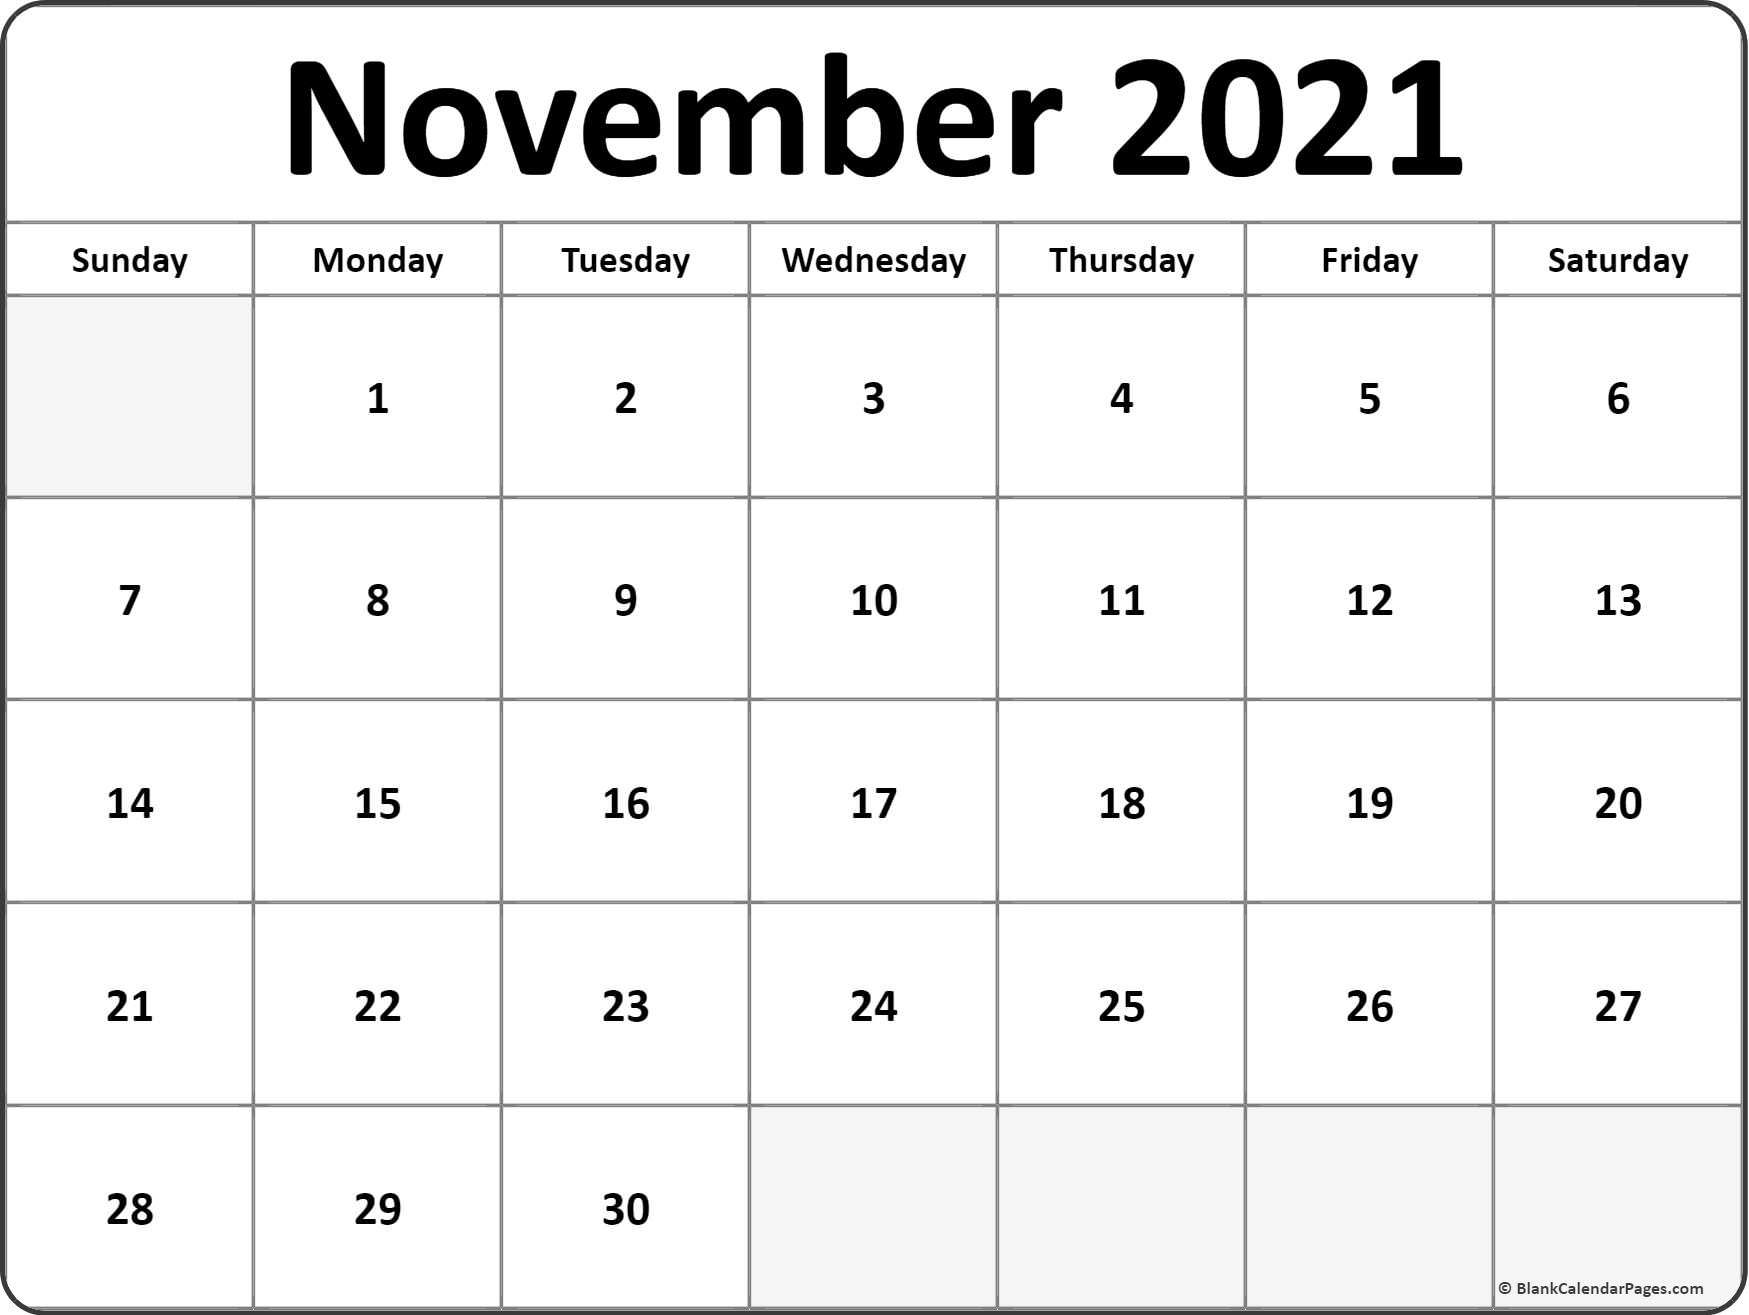 November 2021 Calendar | Free Printable Calendar Templates November December 2021 Calendar